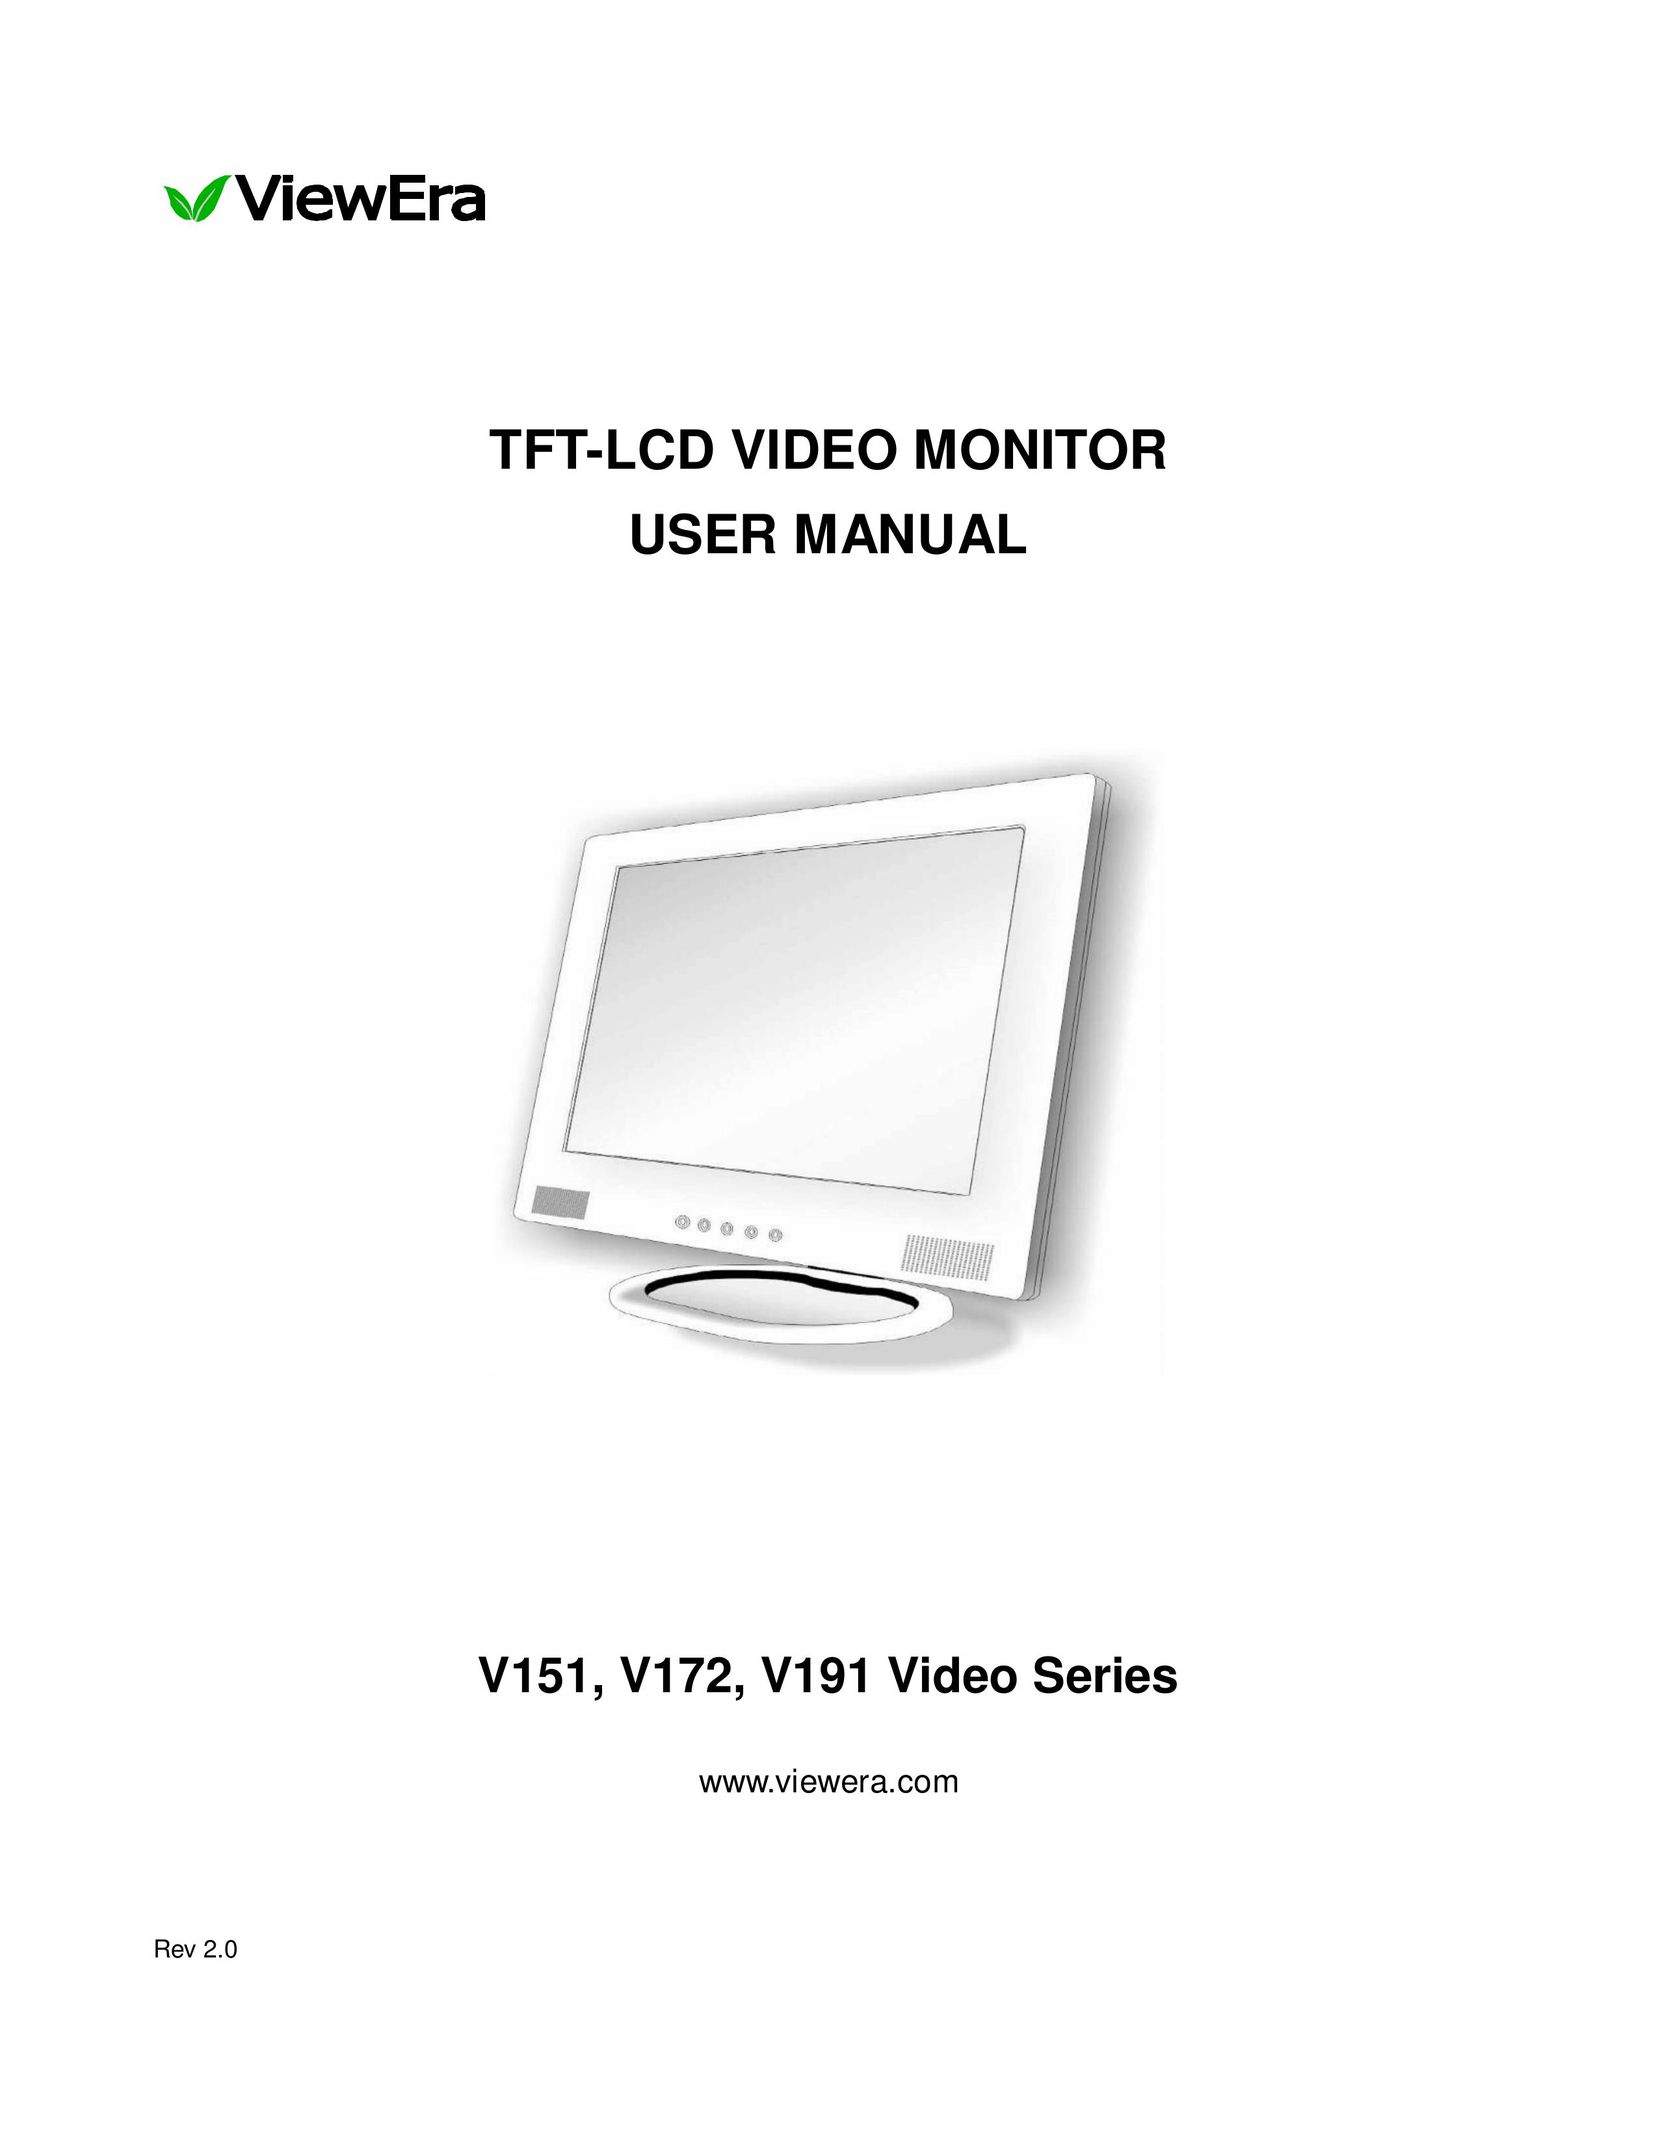 ViewEra V191 Computer Monitor User Manual